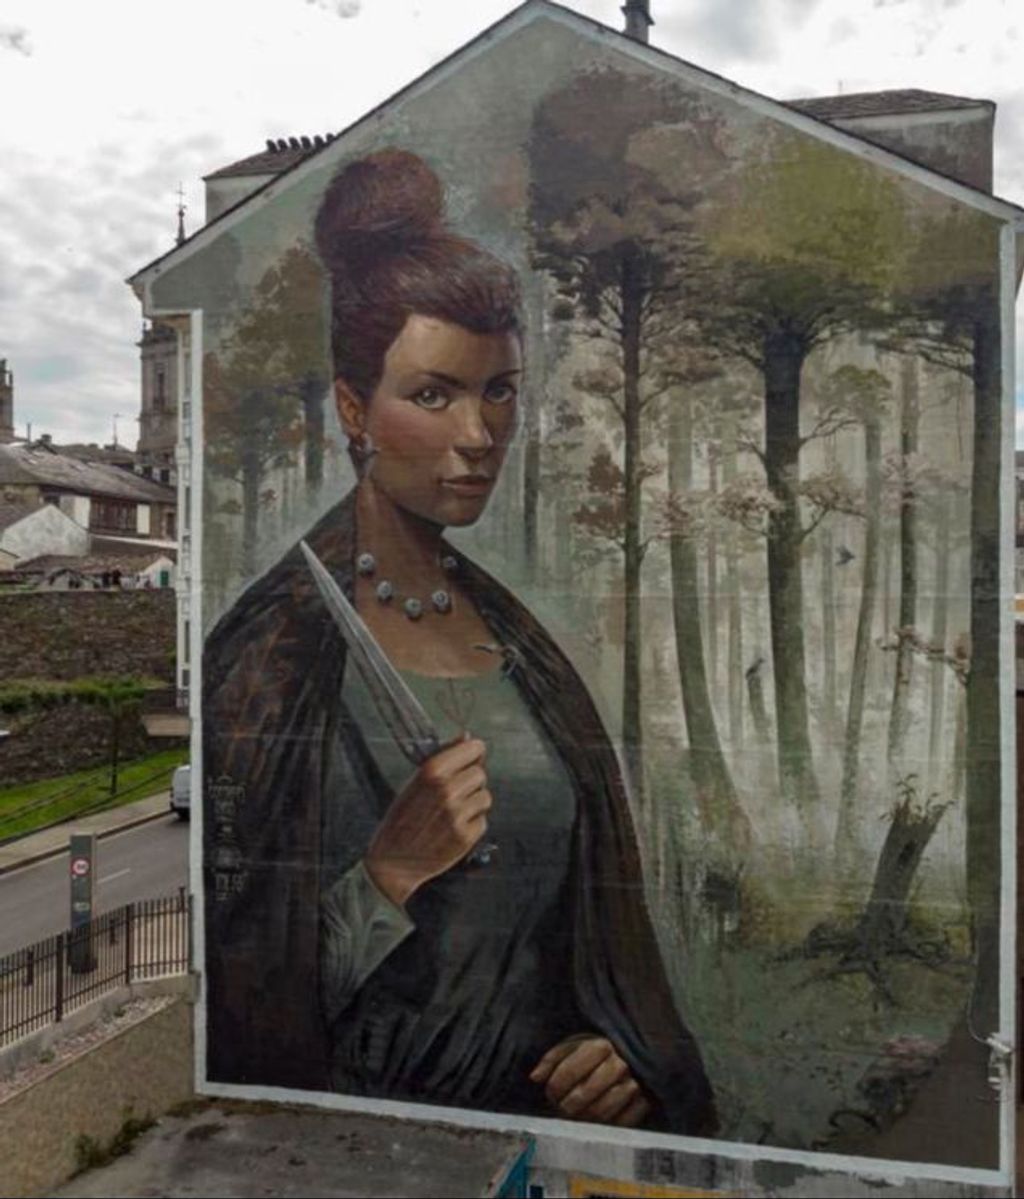 Esta obra ya fue galardonada como “Mejor mural del mes de junio” por la misma plataforma